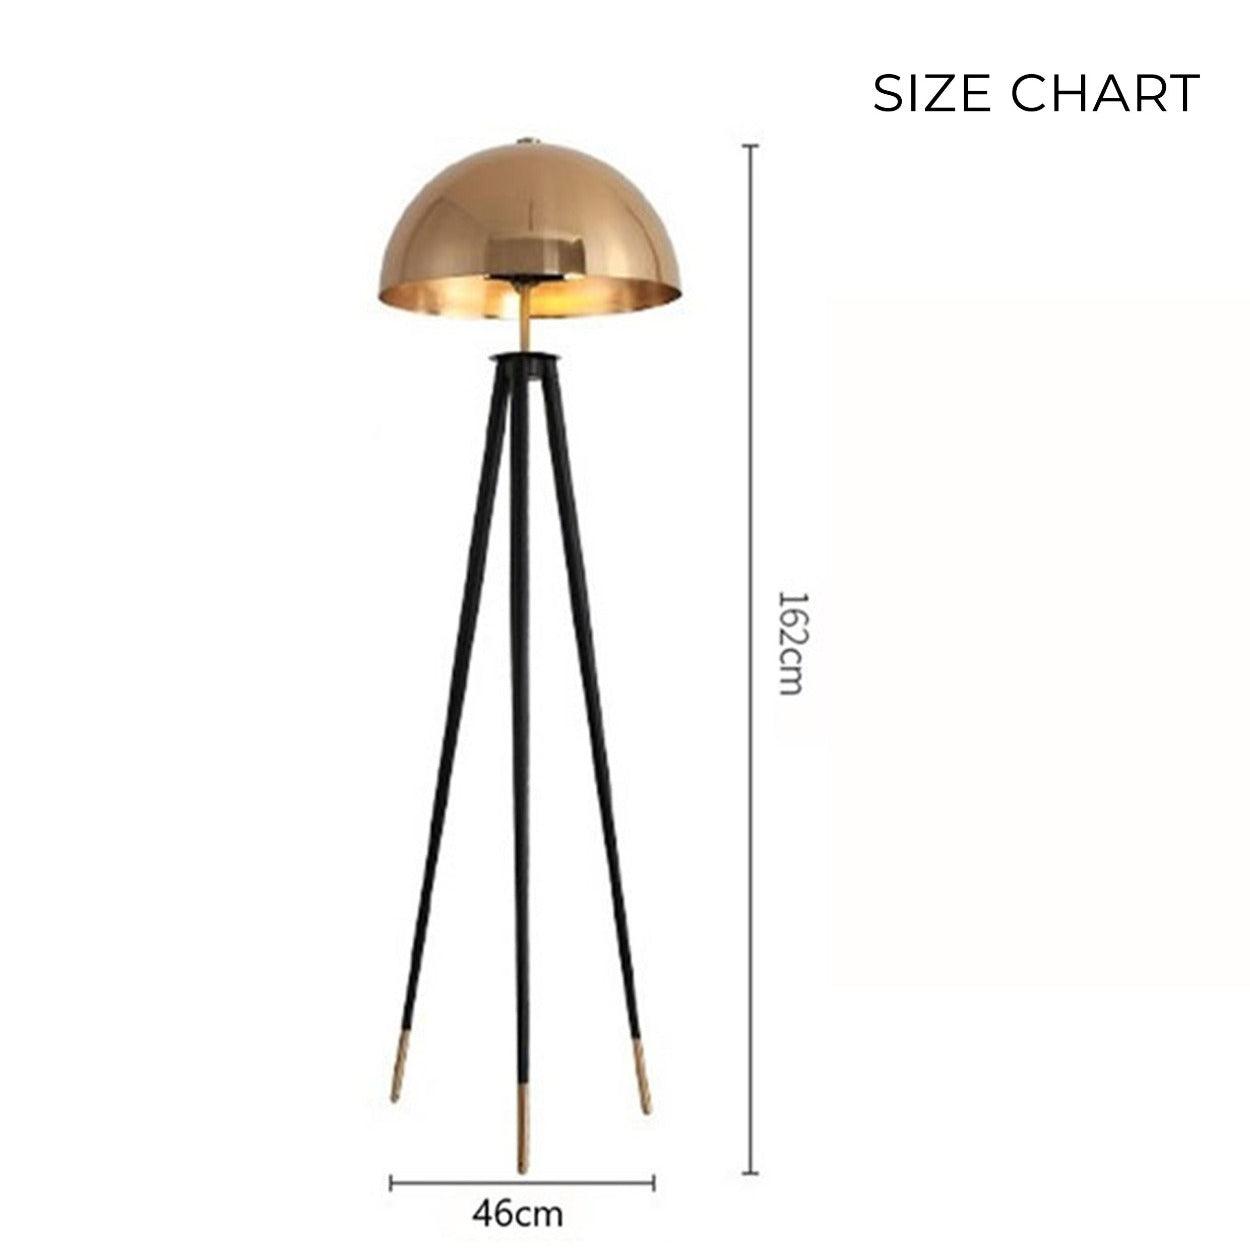 ANKUR MUSHROOM HEAD TRIPOD FLOOR LAMP - Ankur Lighting